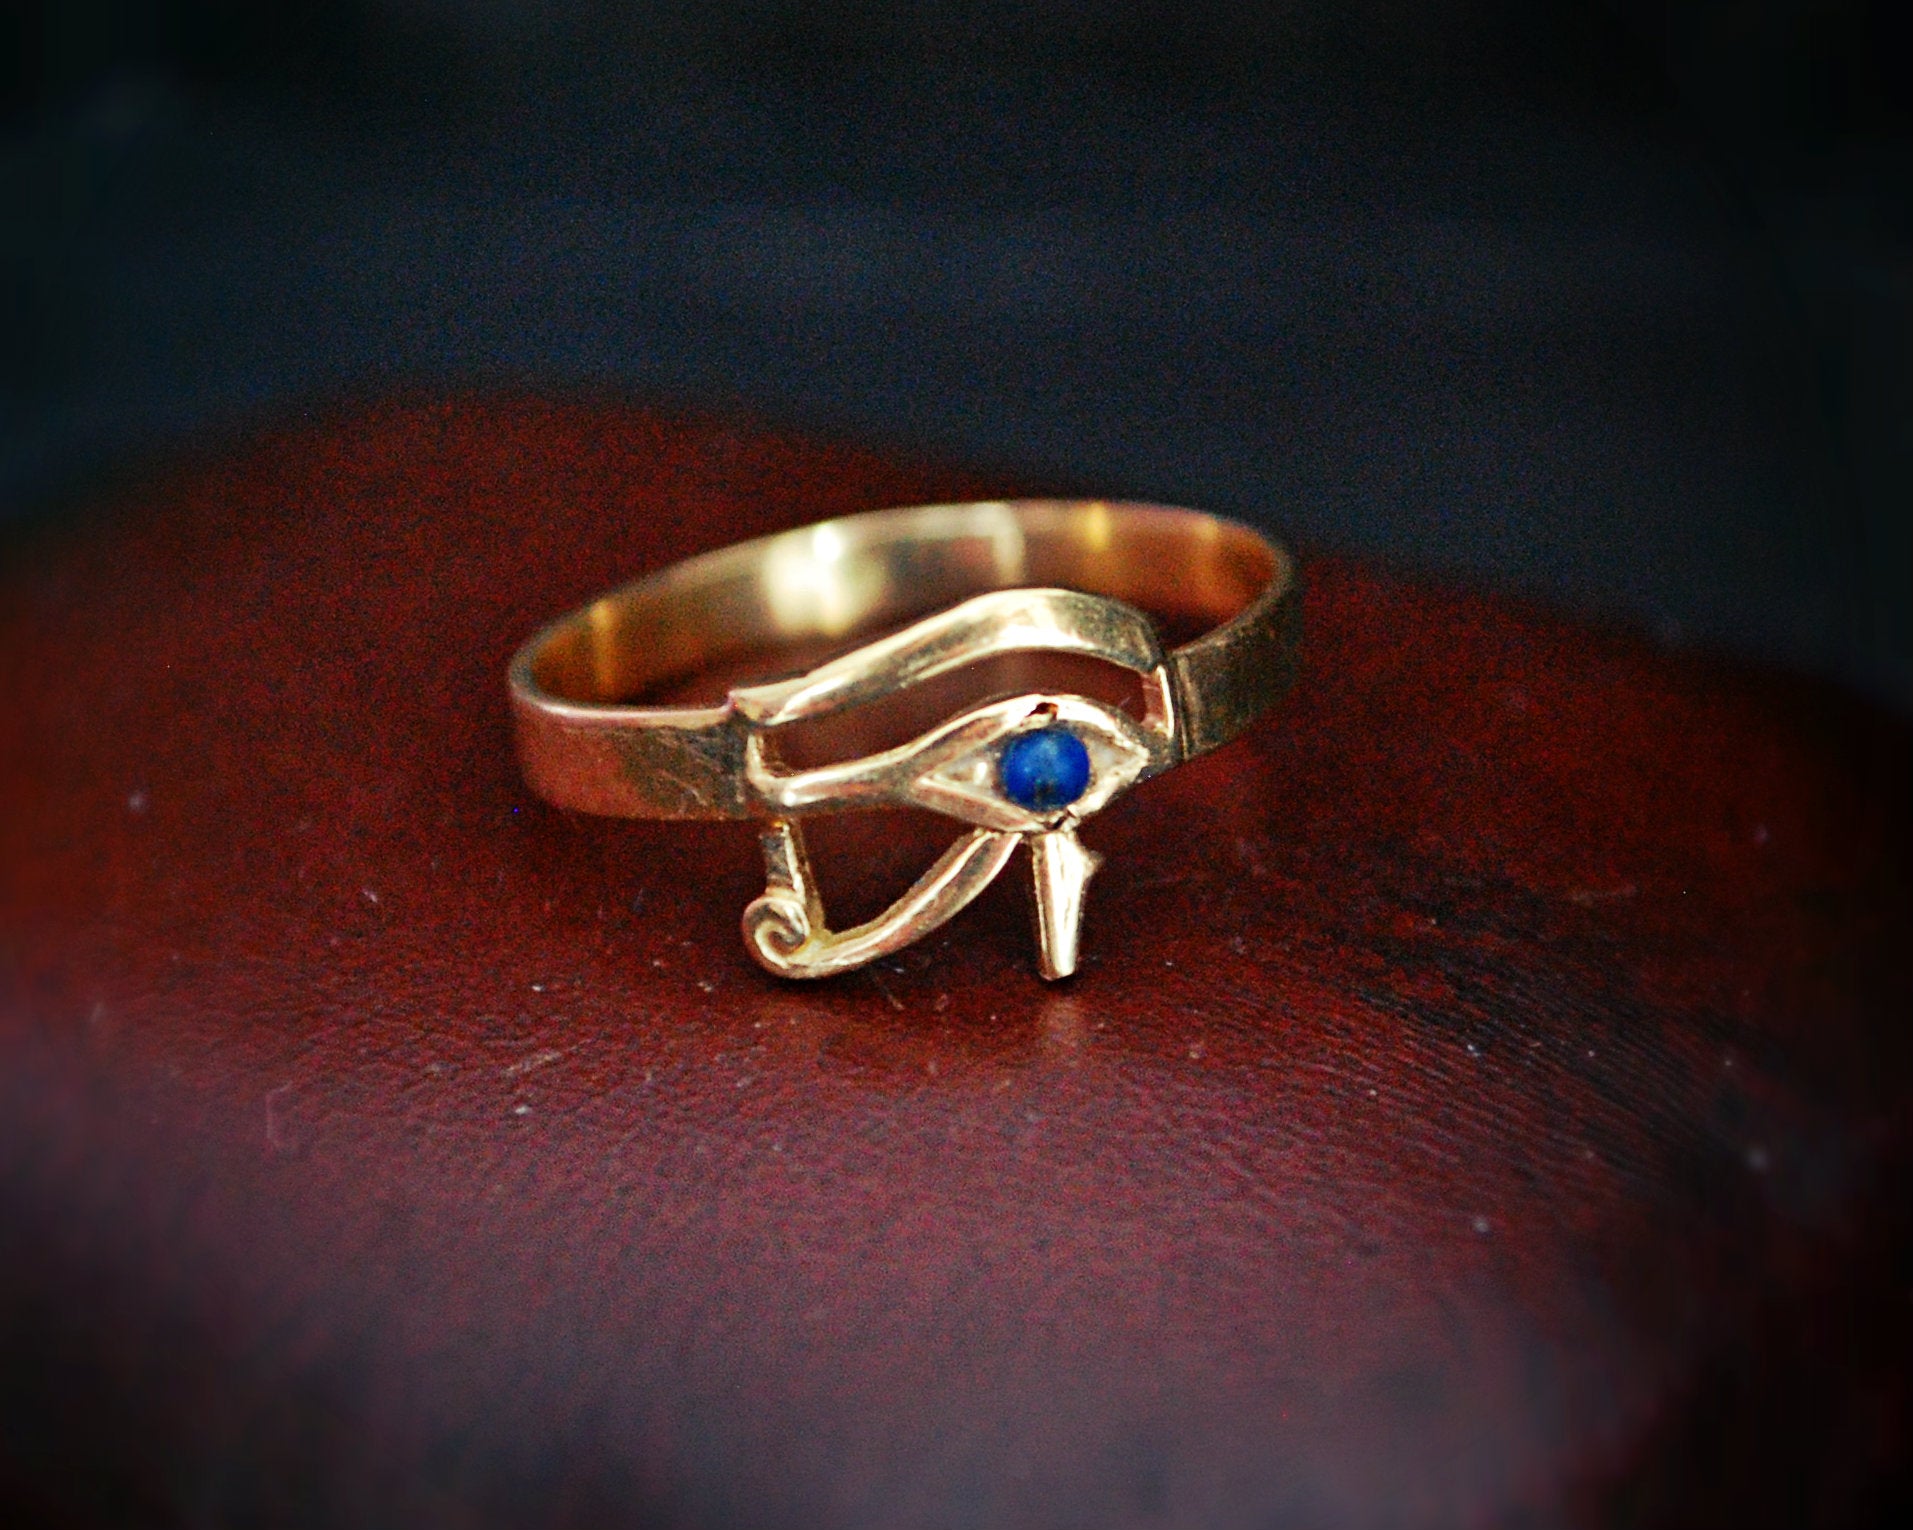 18K Gold Eye of Horus Ring with Lapis Lazuli